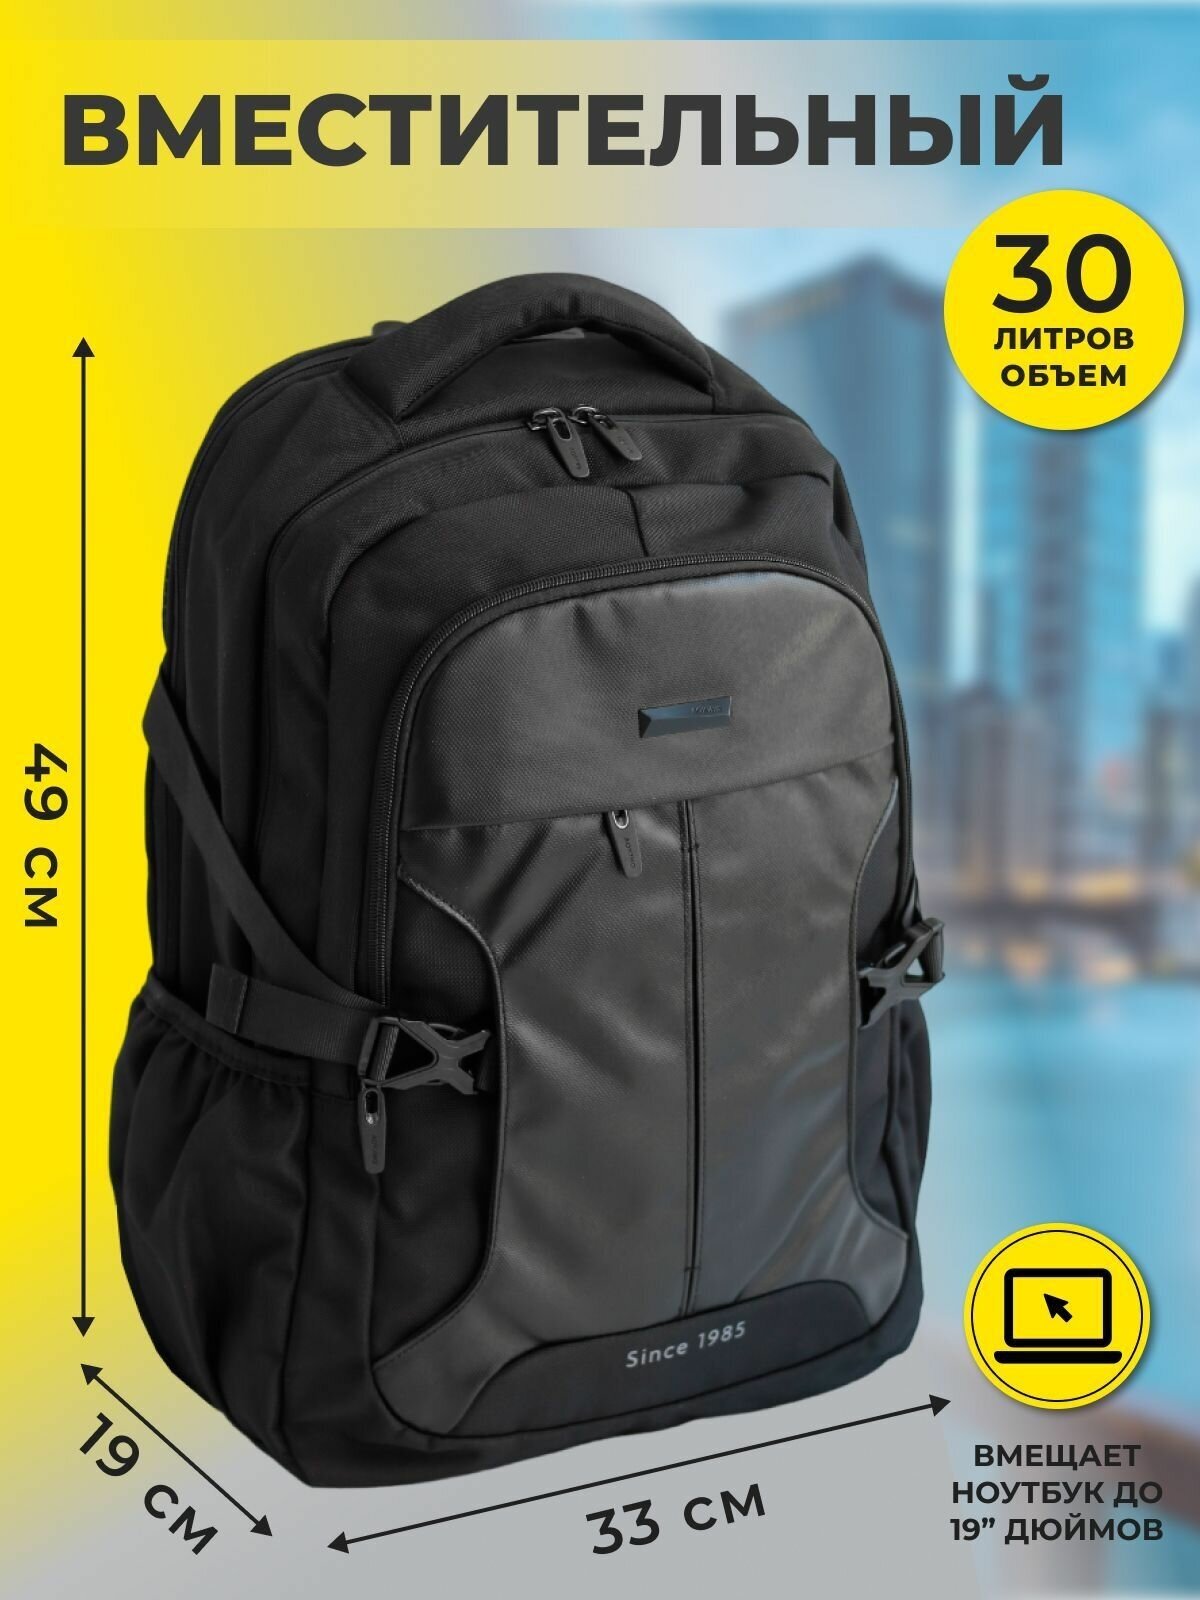 Вместительный мужской рюкзак AOKING 67732BL с вентилируемой спиной и водоотталкивающим покрытием, черный